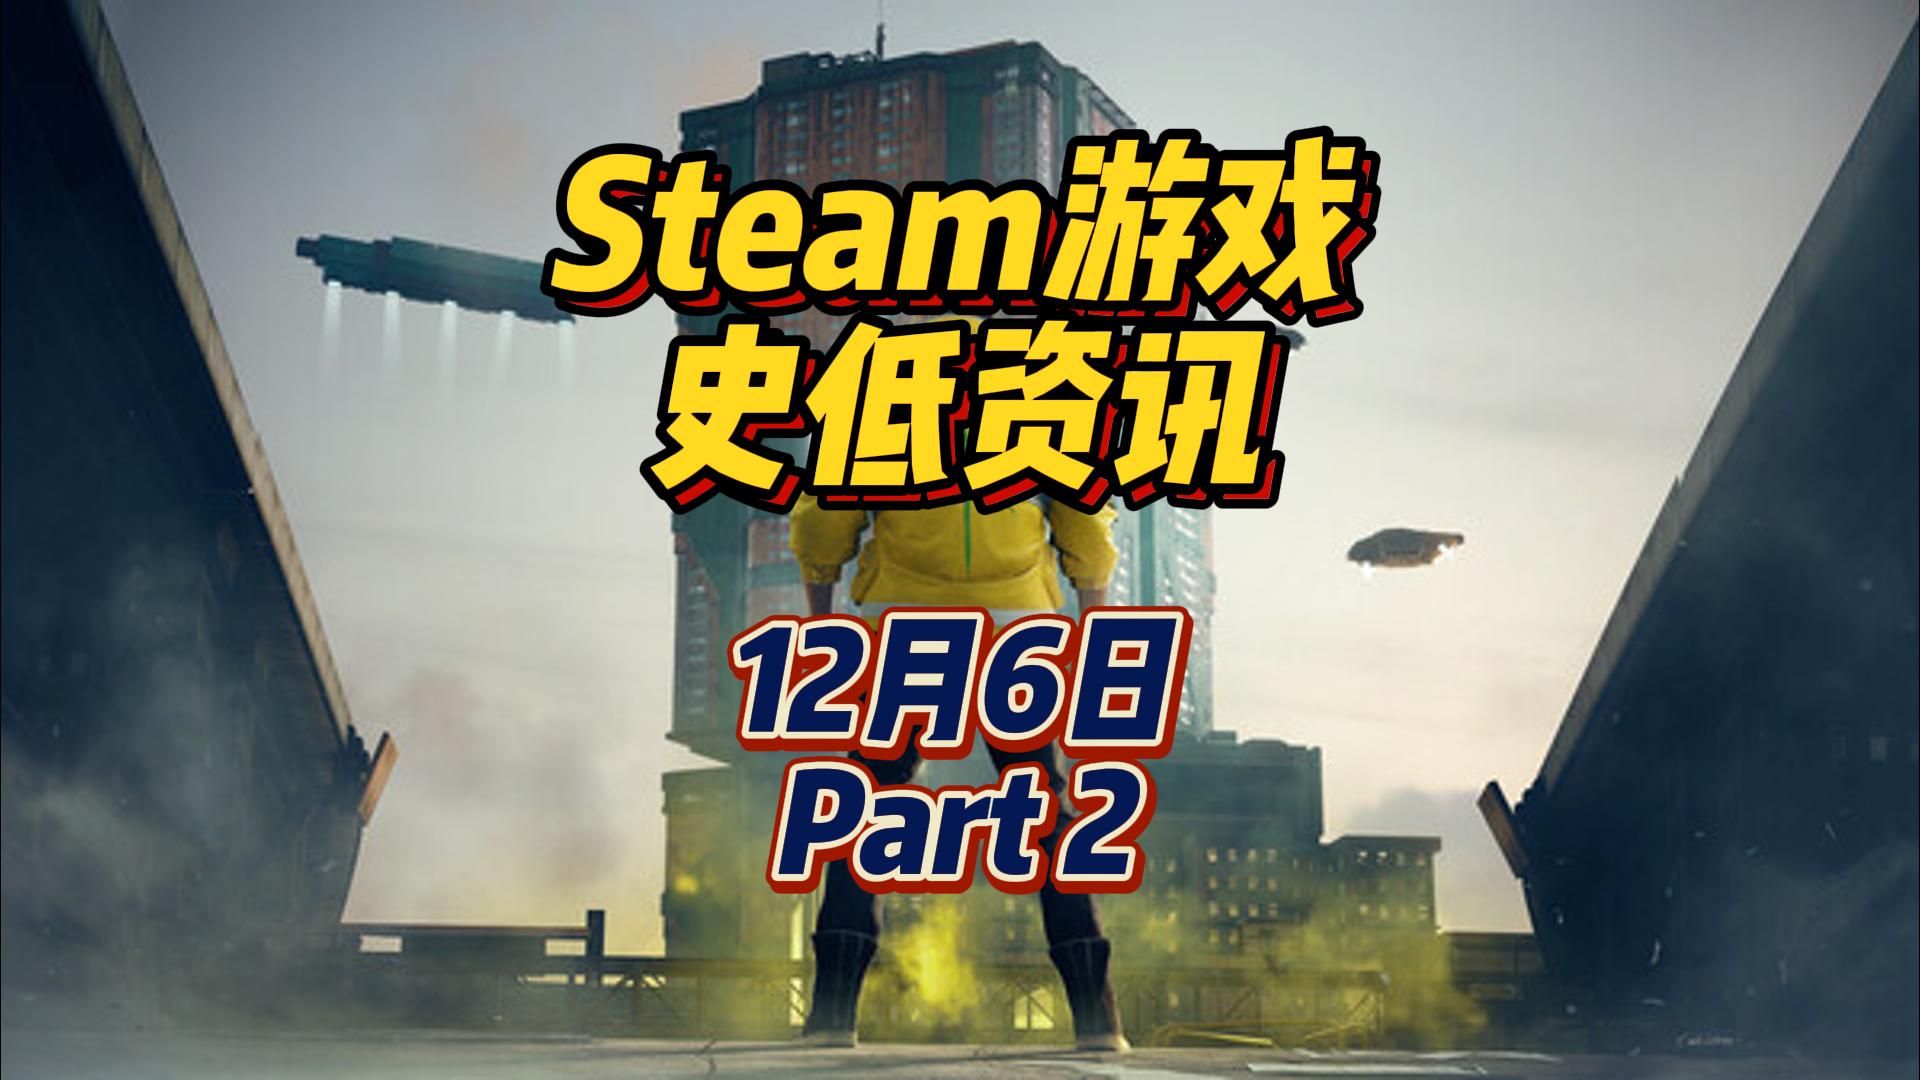 赛博朋克 2077 终极版新史低，12 月 6 日 Steam 史低游戏 Part 2